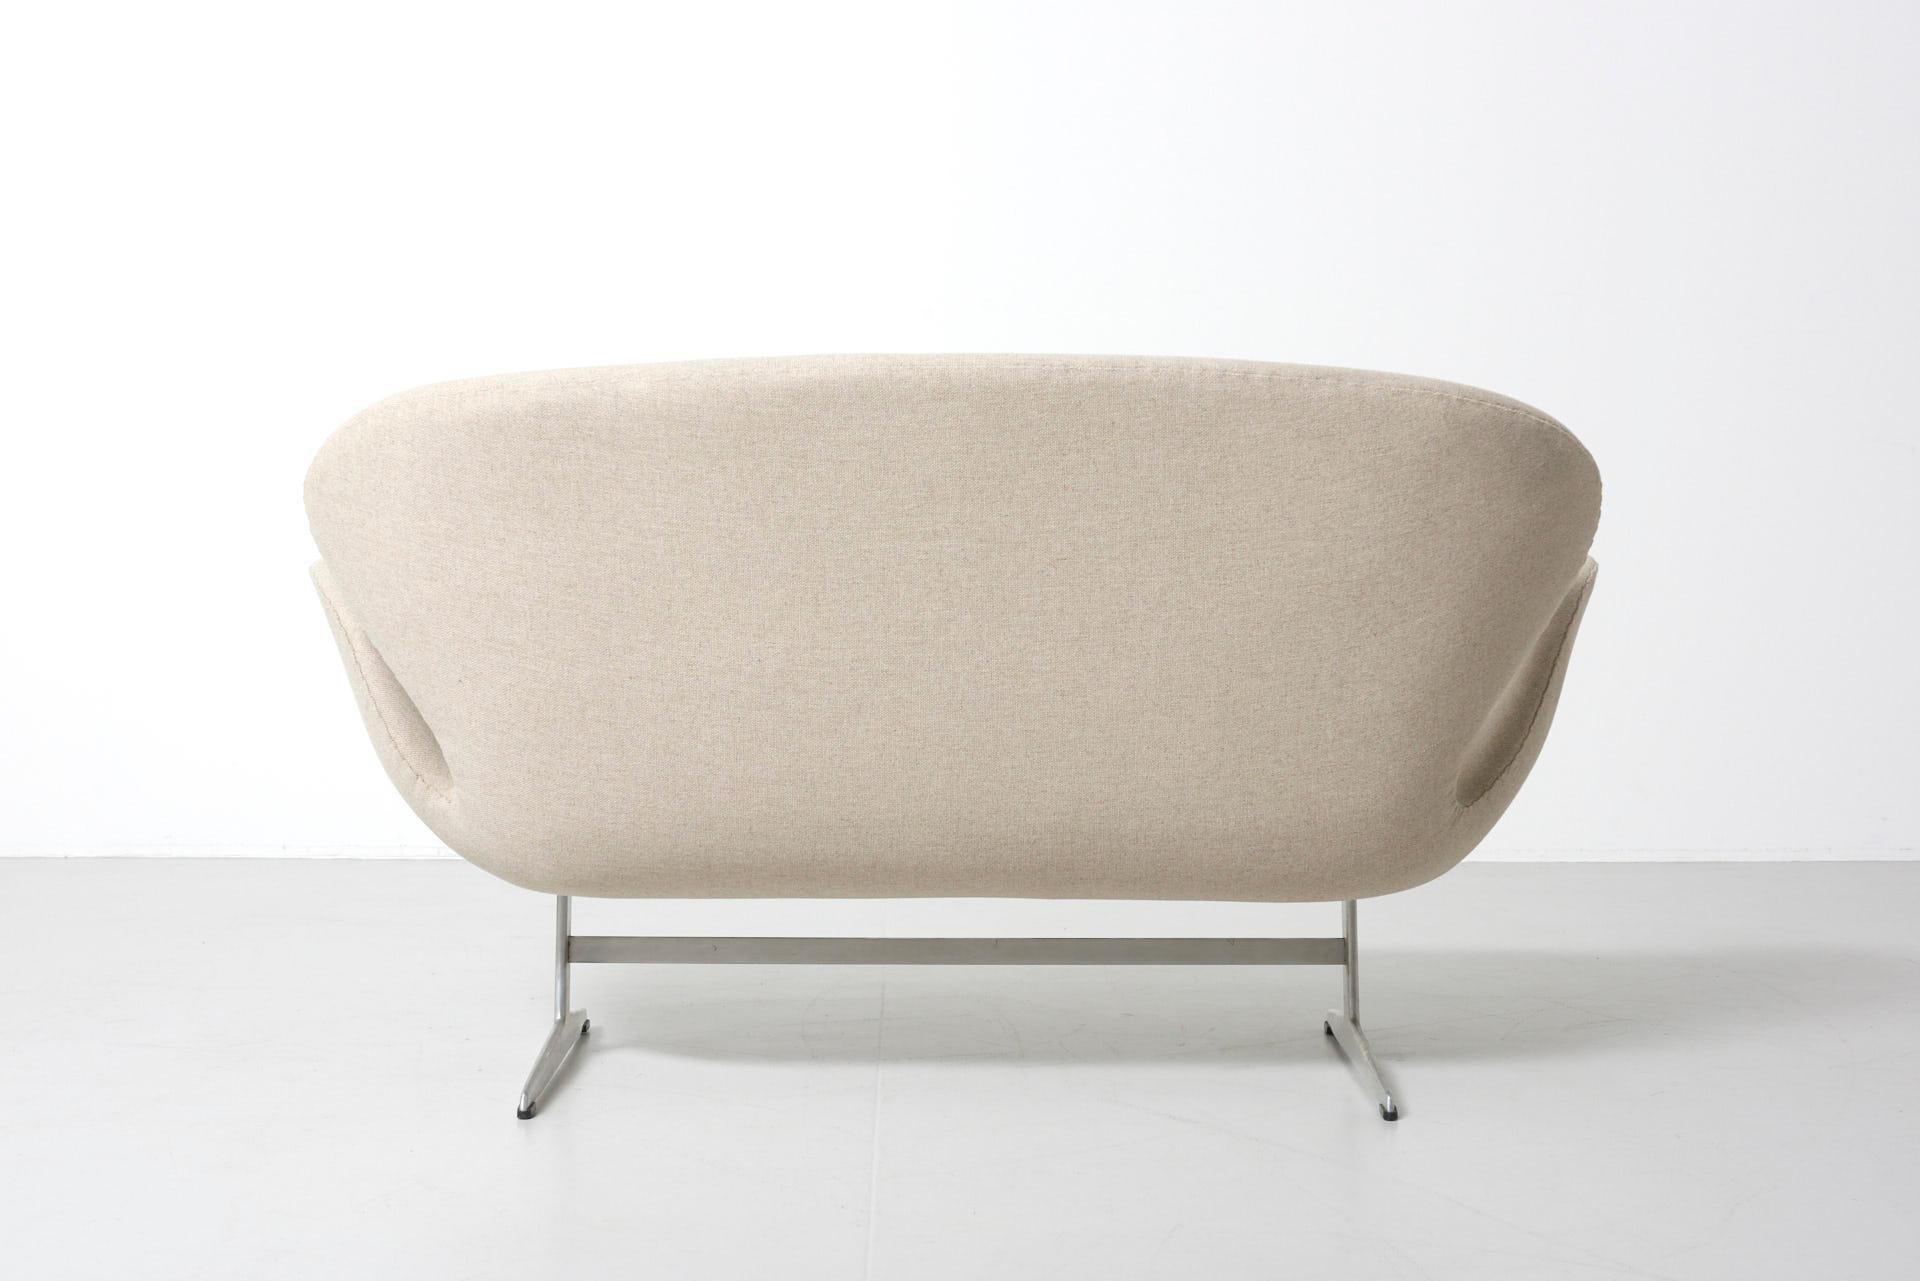 Steel White Swan Sofa by Arne Jacobsen for Fritz Hansen, Denmark